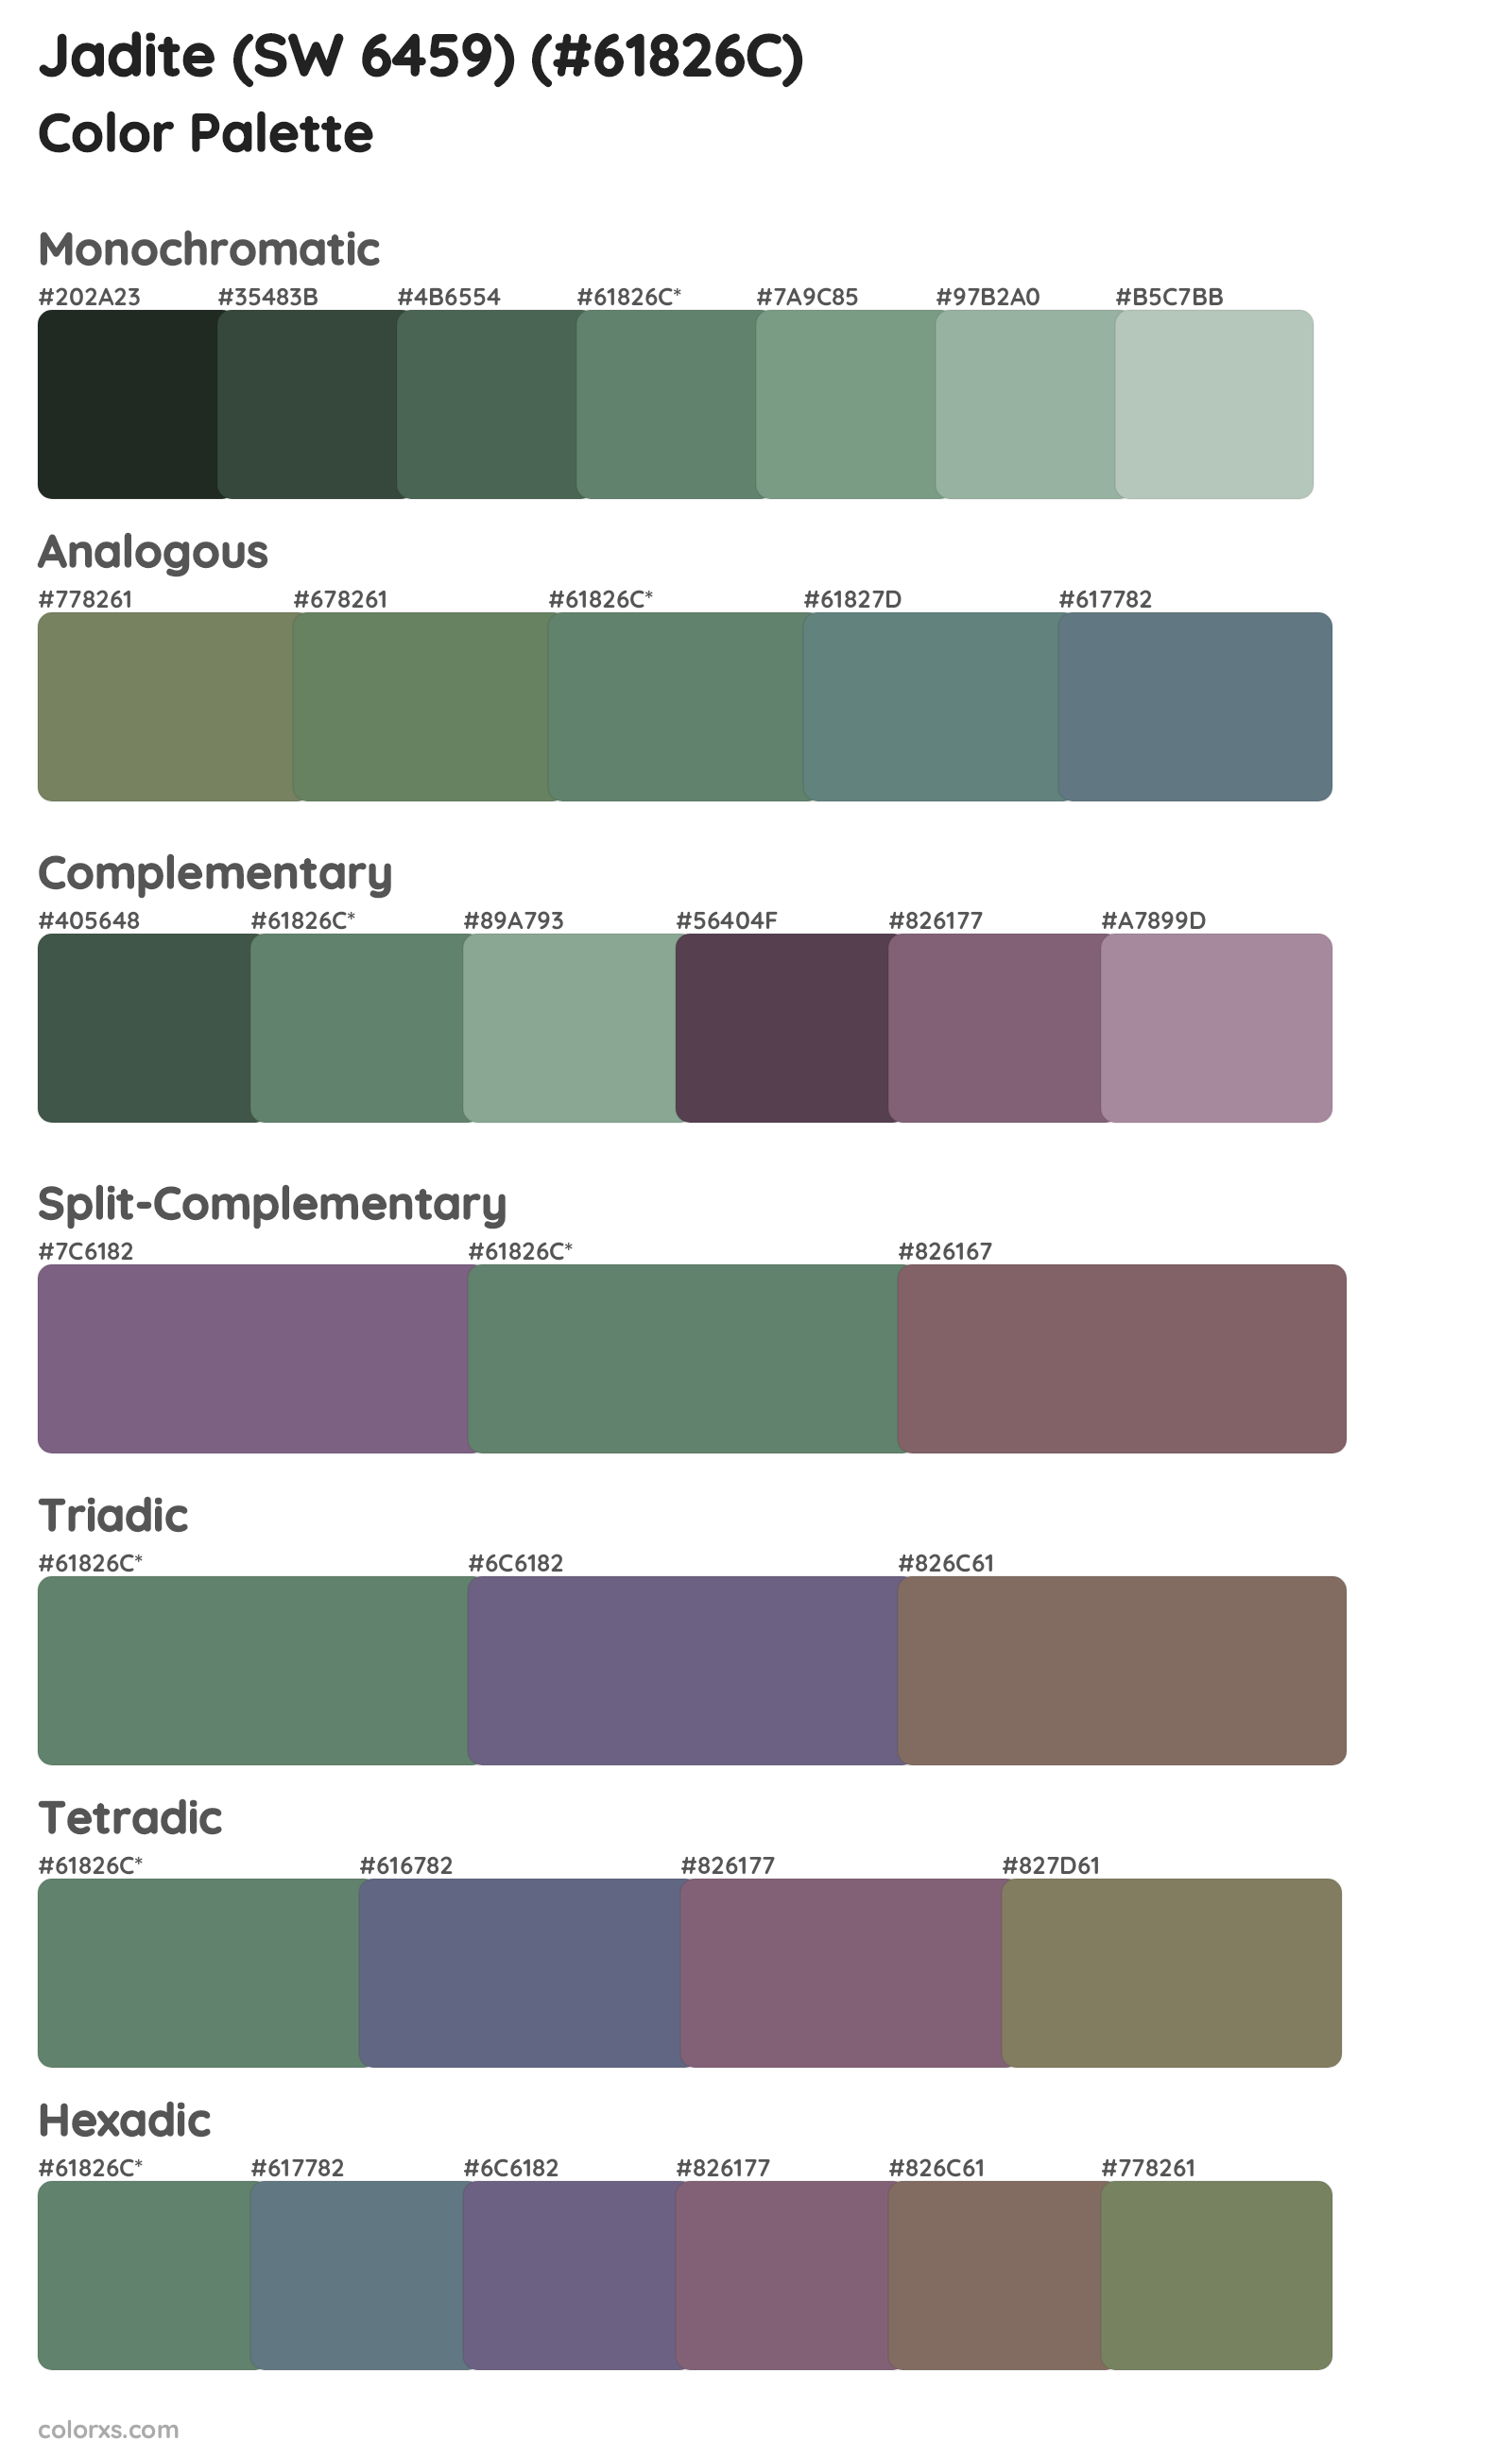 Jadite (SW 6459) Color Scheme Palettes